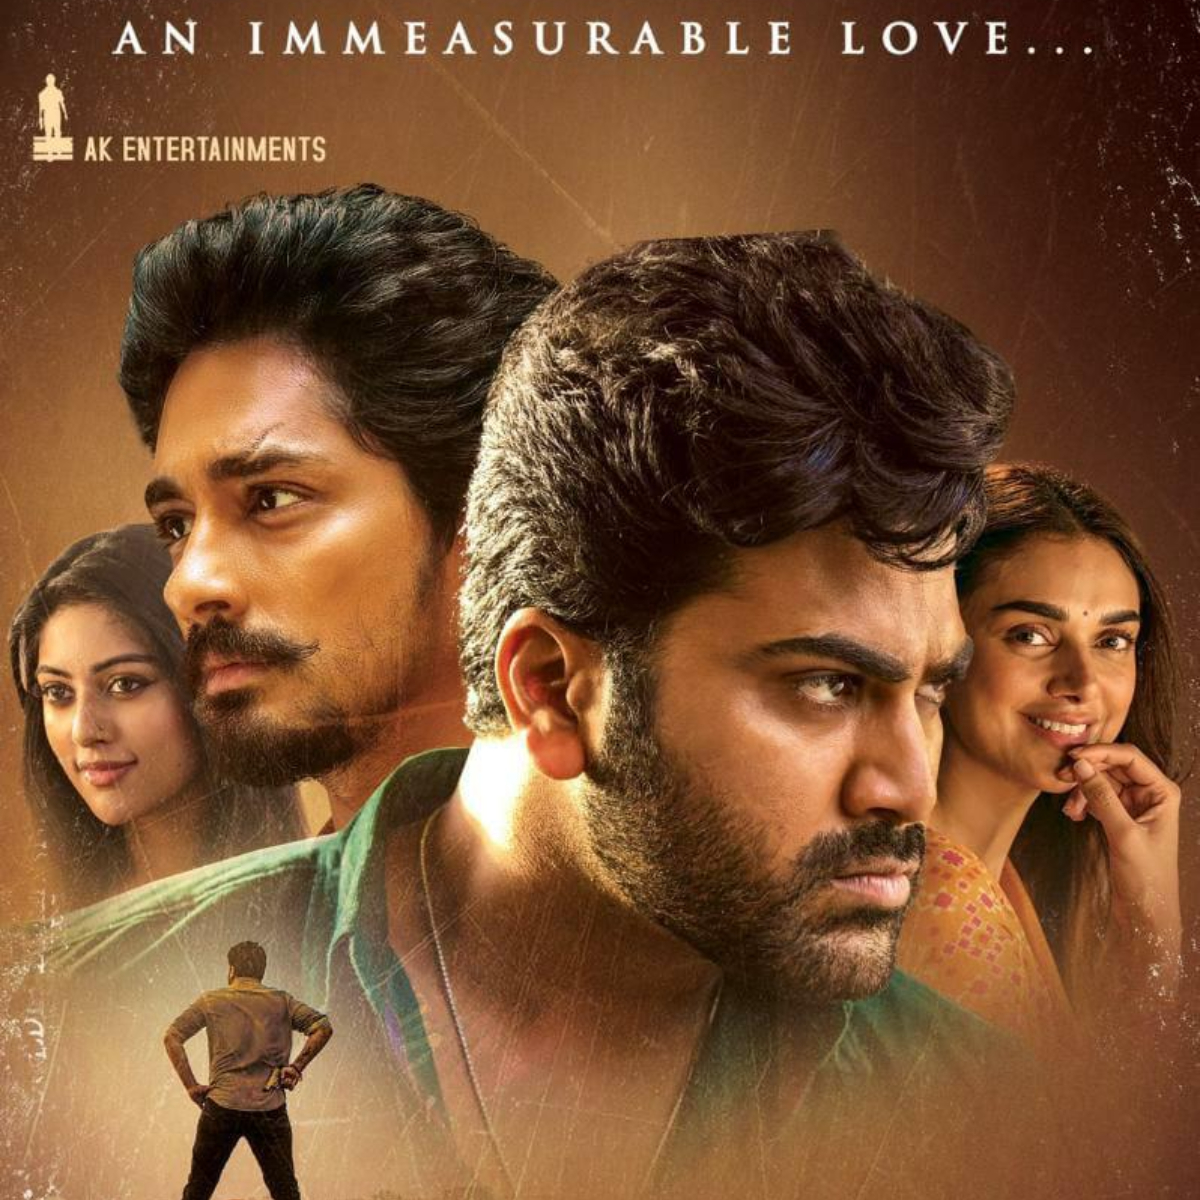 Maha Samudram Movie Review